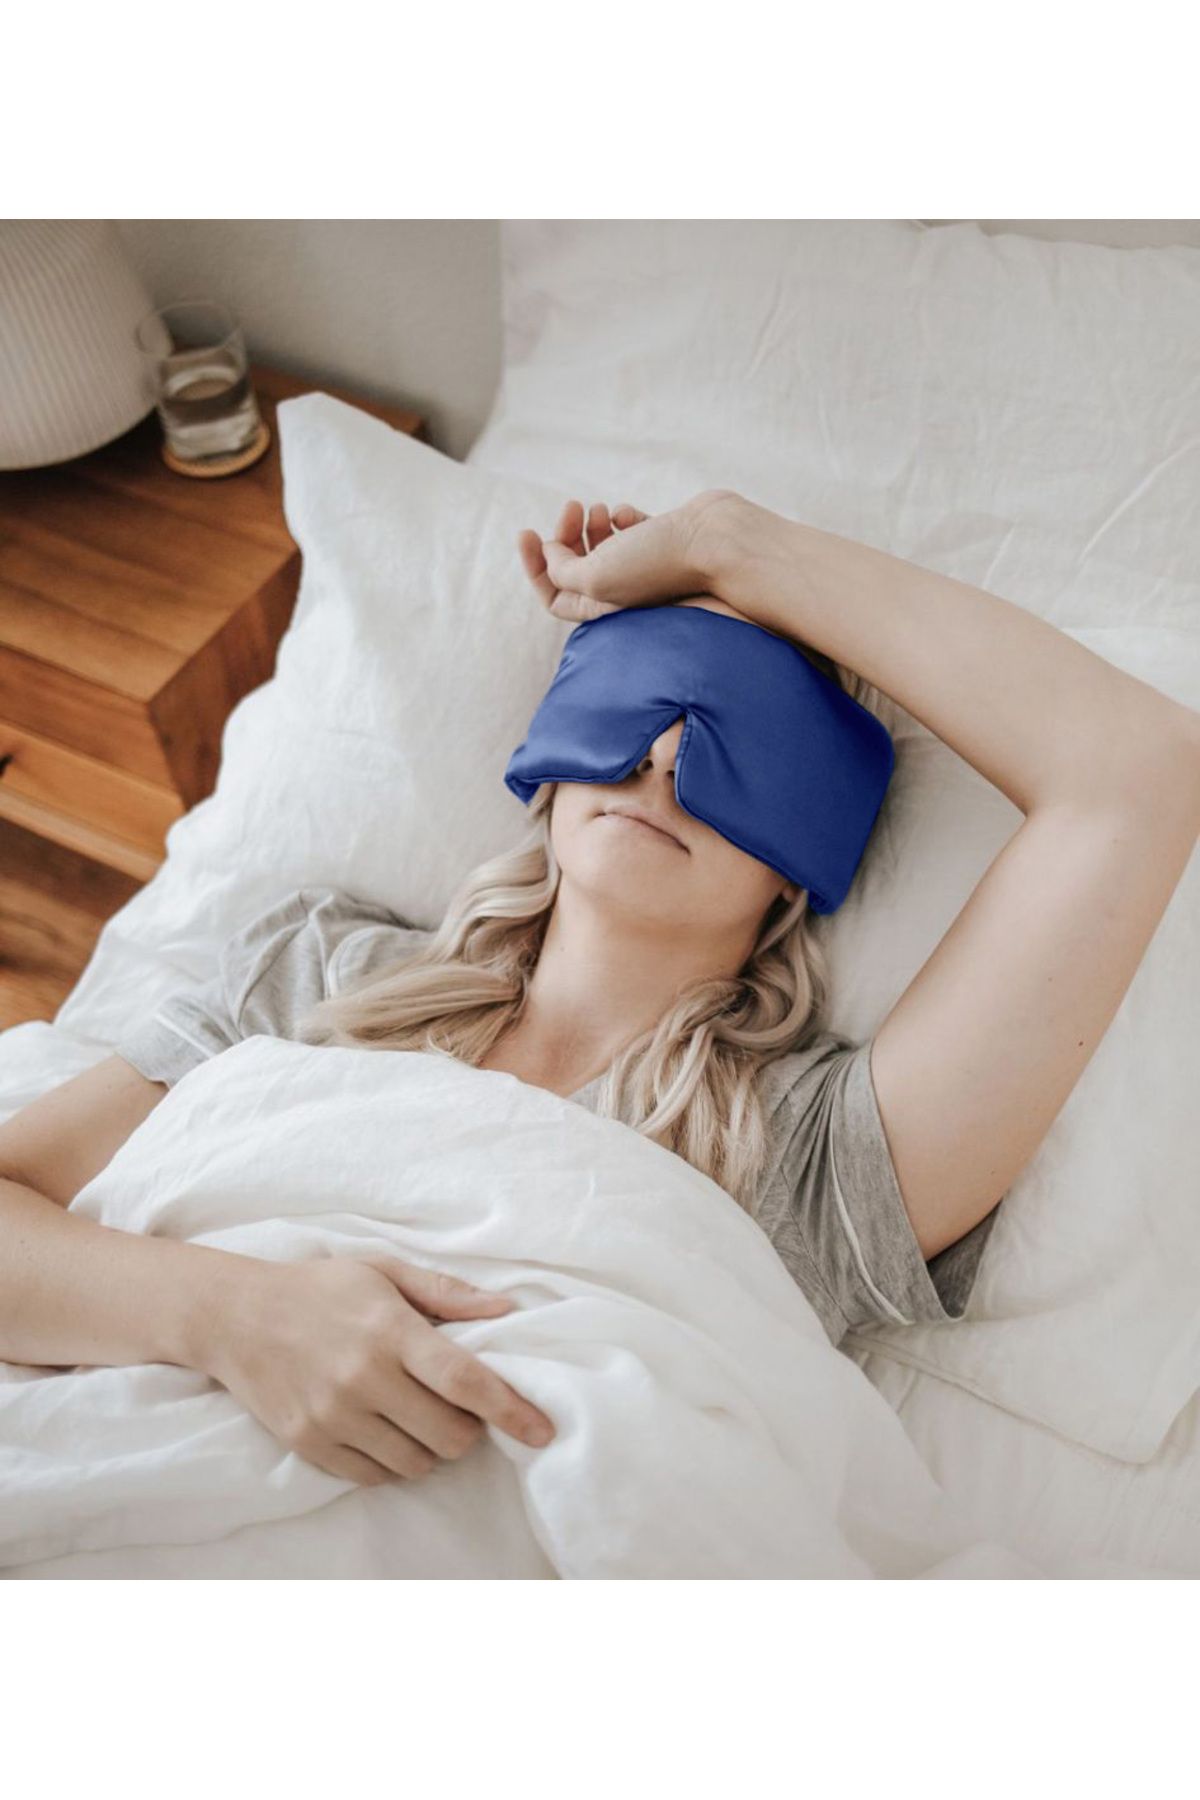 Sinada Doğal Taşlı Uyku Bandı Uyku Maskesi (Işık Önleyici) Lüks Pamuk Mavi